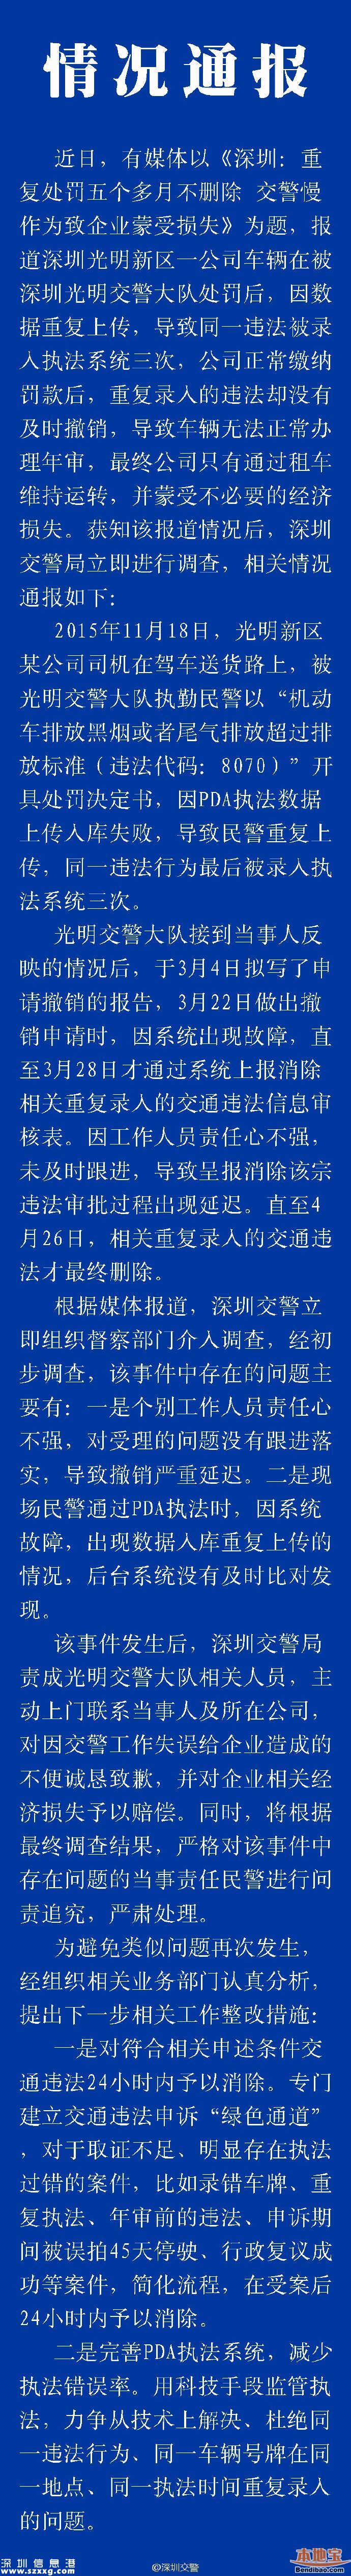 深圳交警慢作为致企业蒙受损失 承认错误承诺赔偿